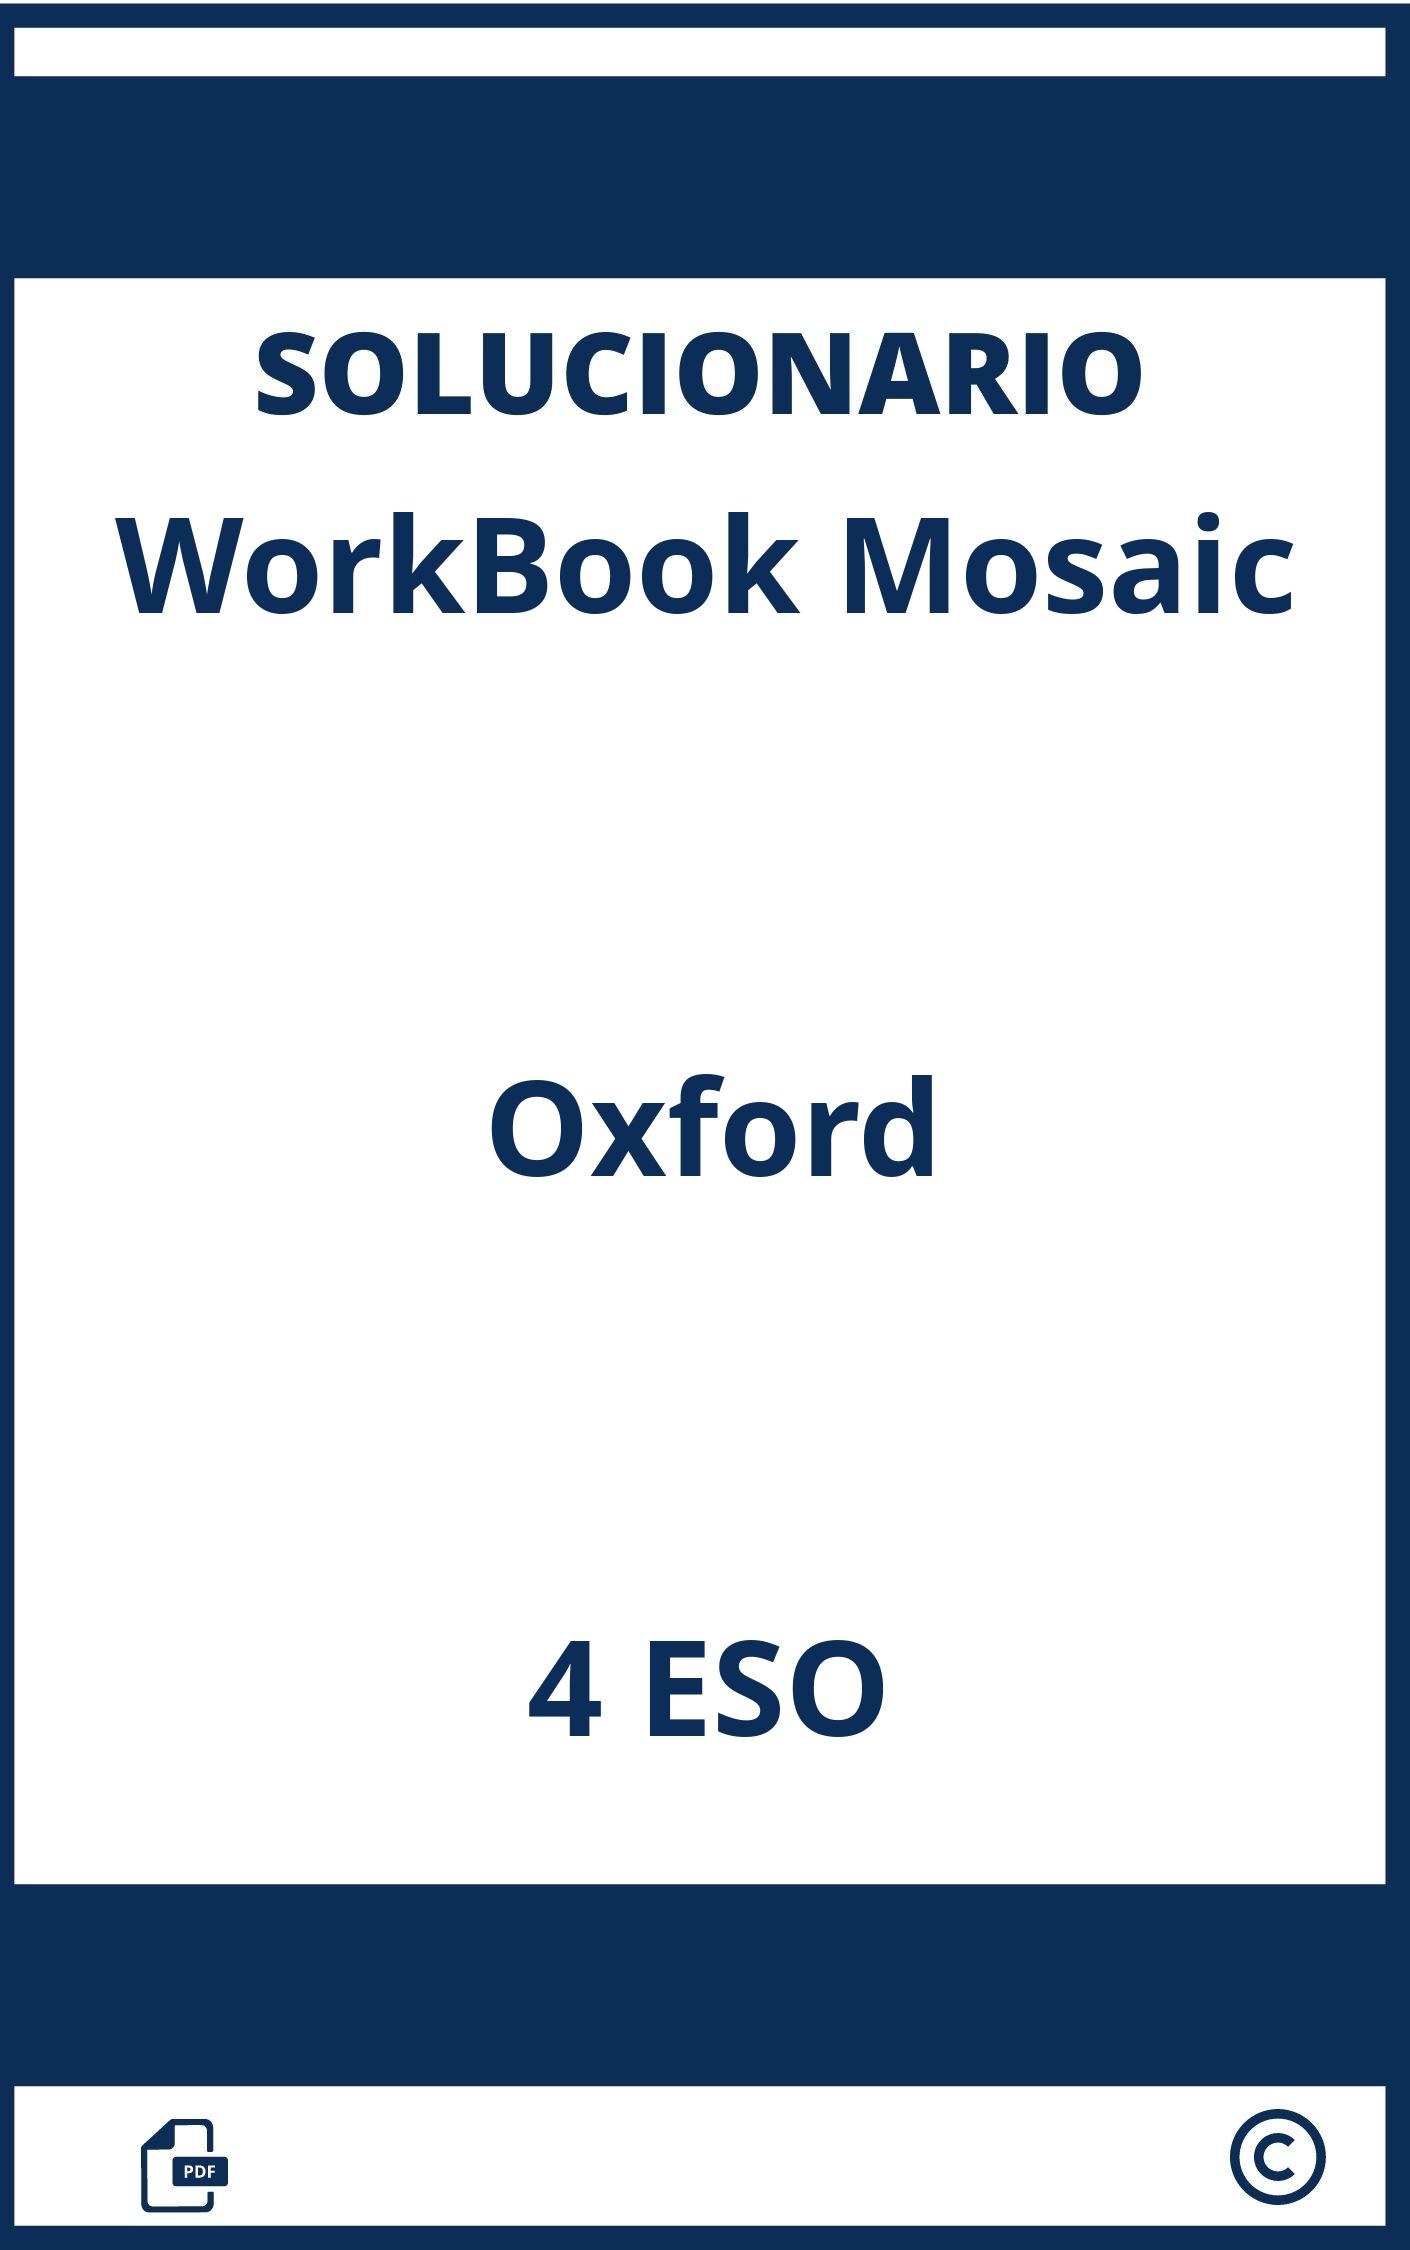 Solucionario Workbook 4 Eso Oxford Mosaic